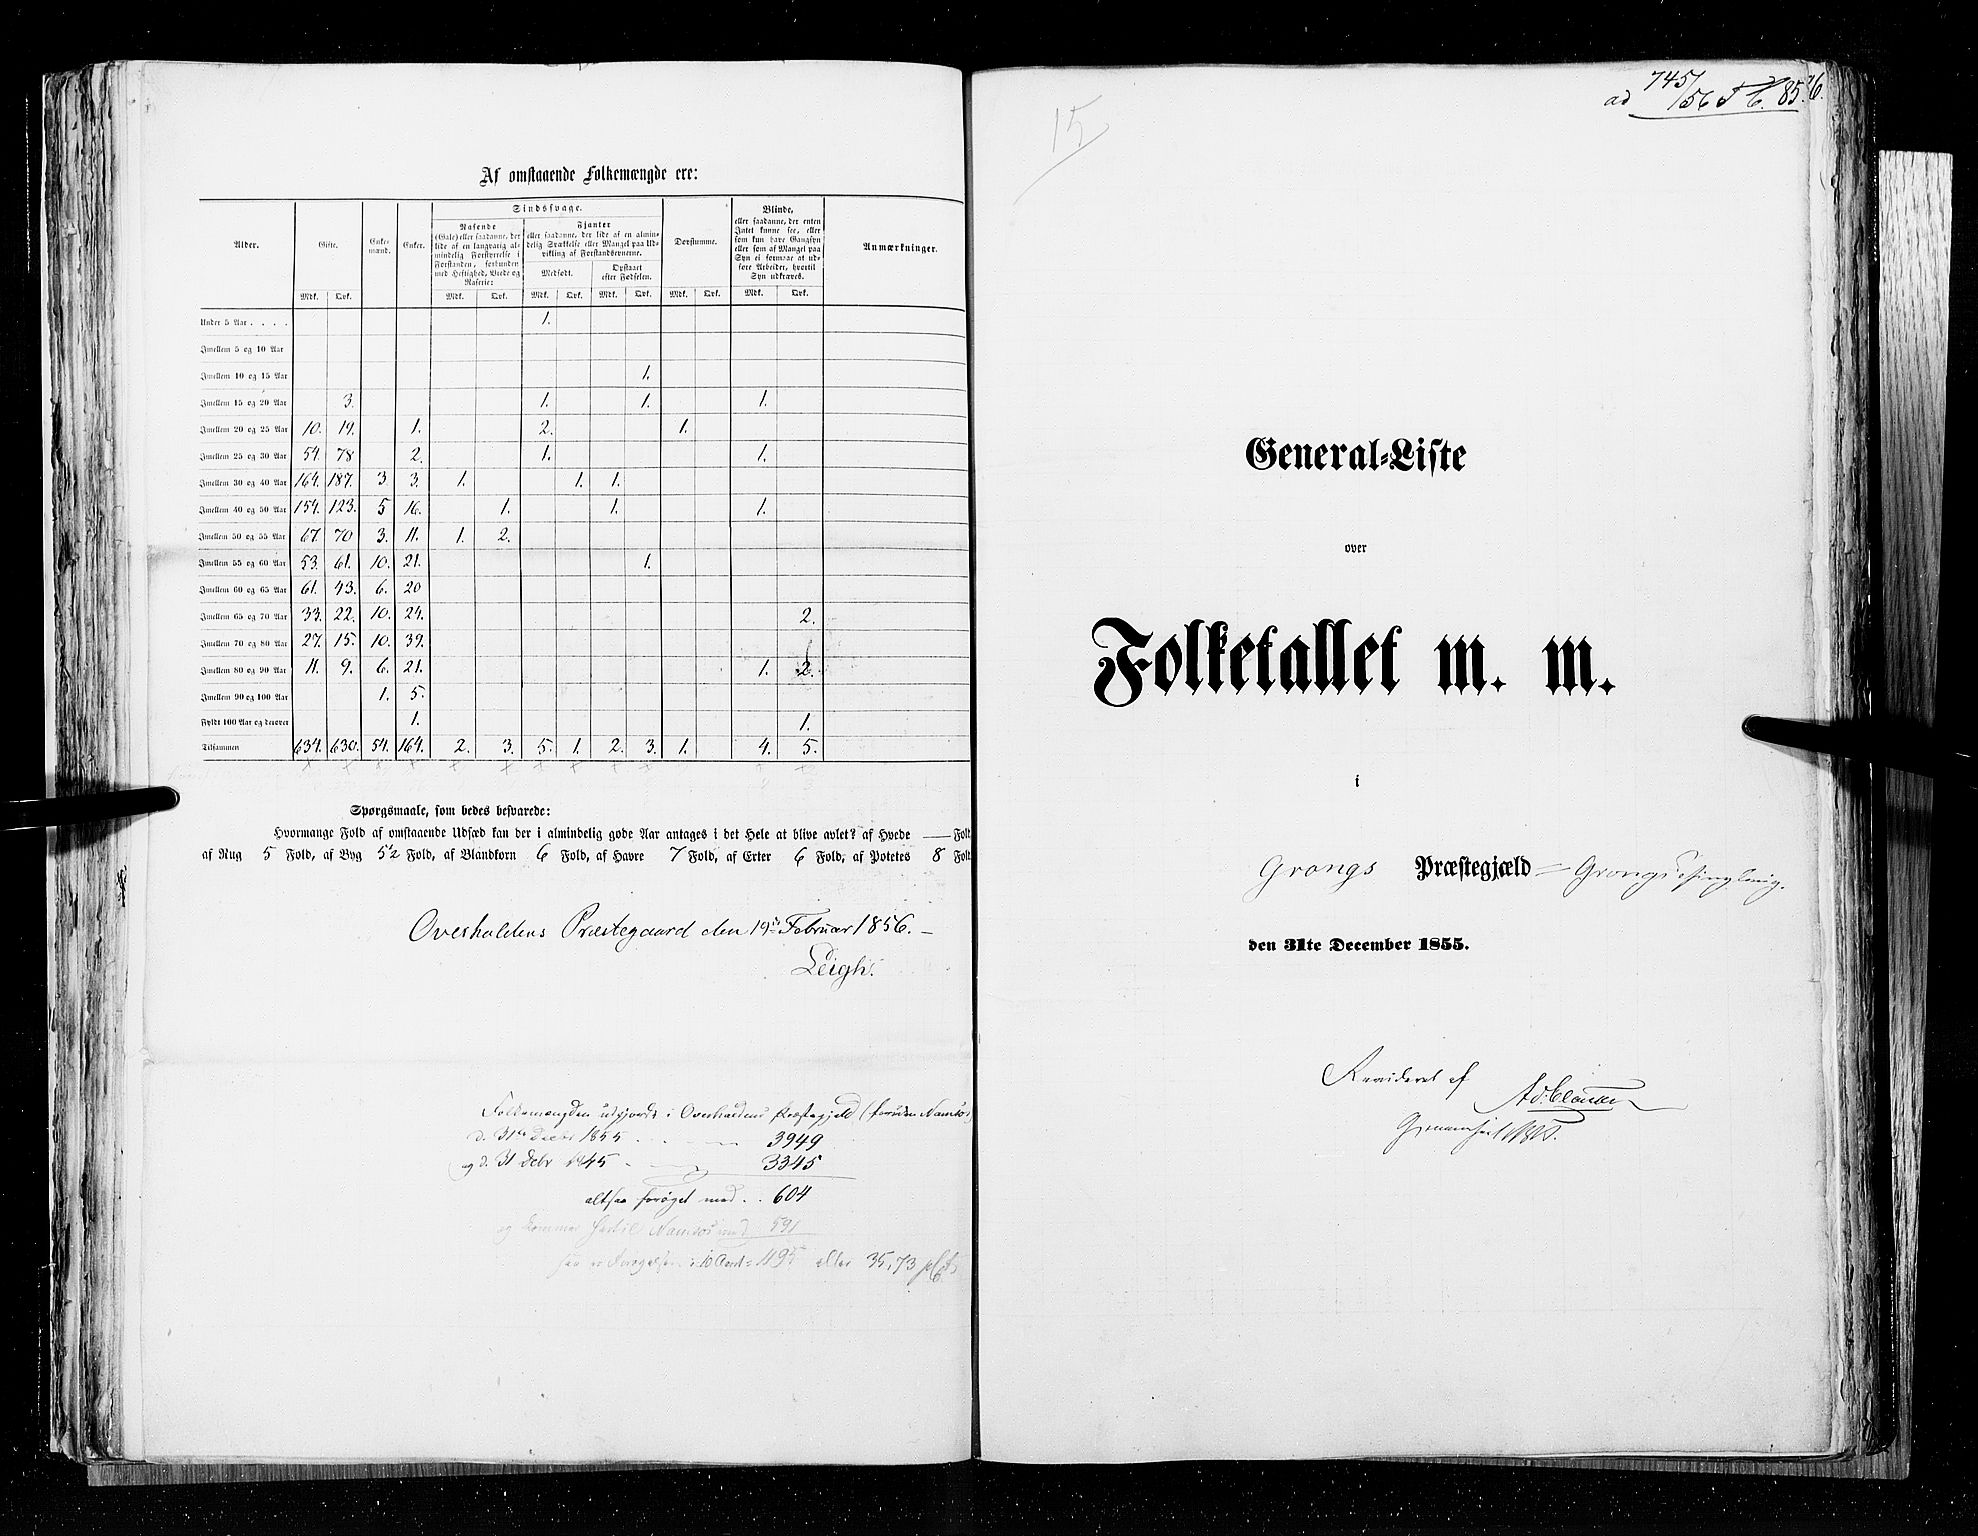 RA, Census 1855, vol. 6A: Nordre Trondhjem amt og Nordland amt, 1855, p. 85